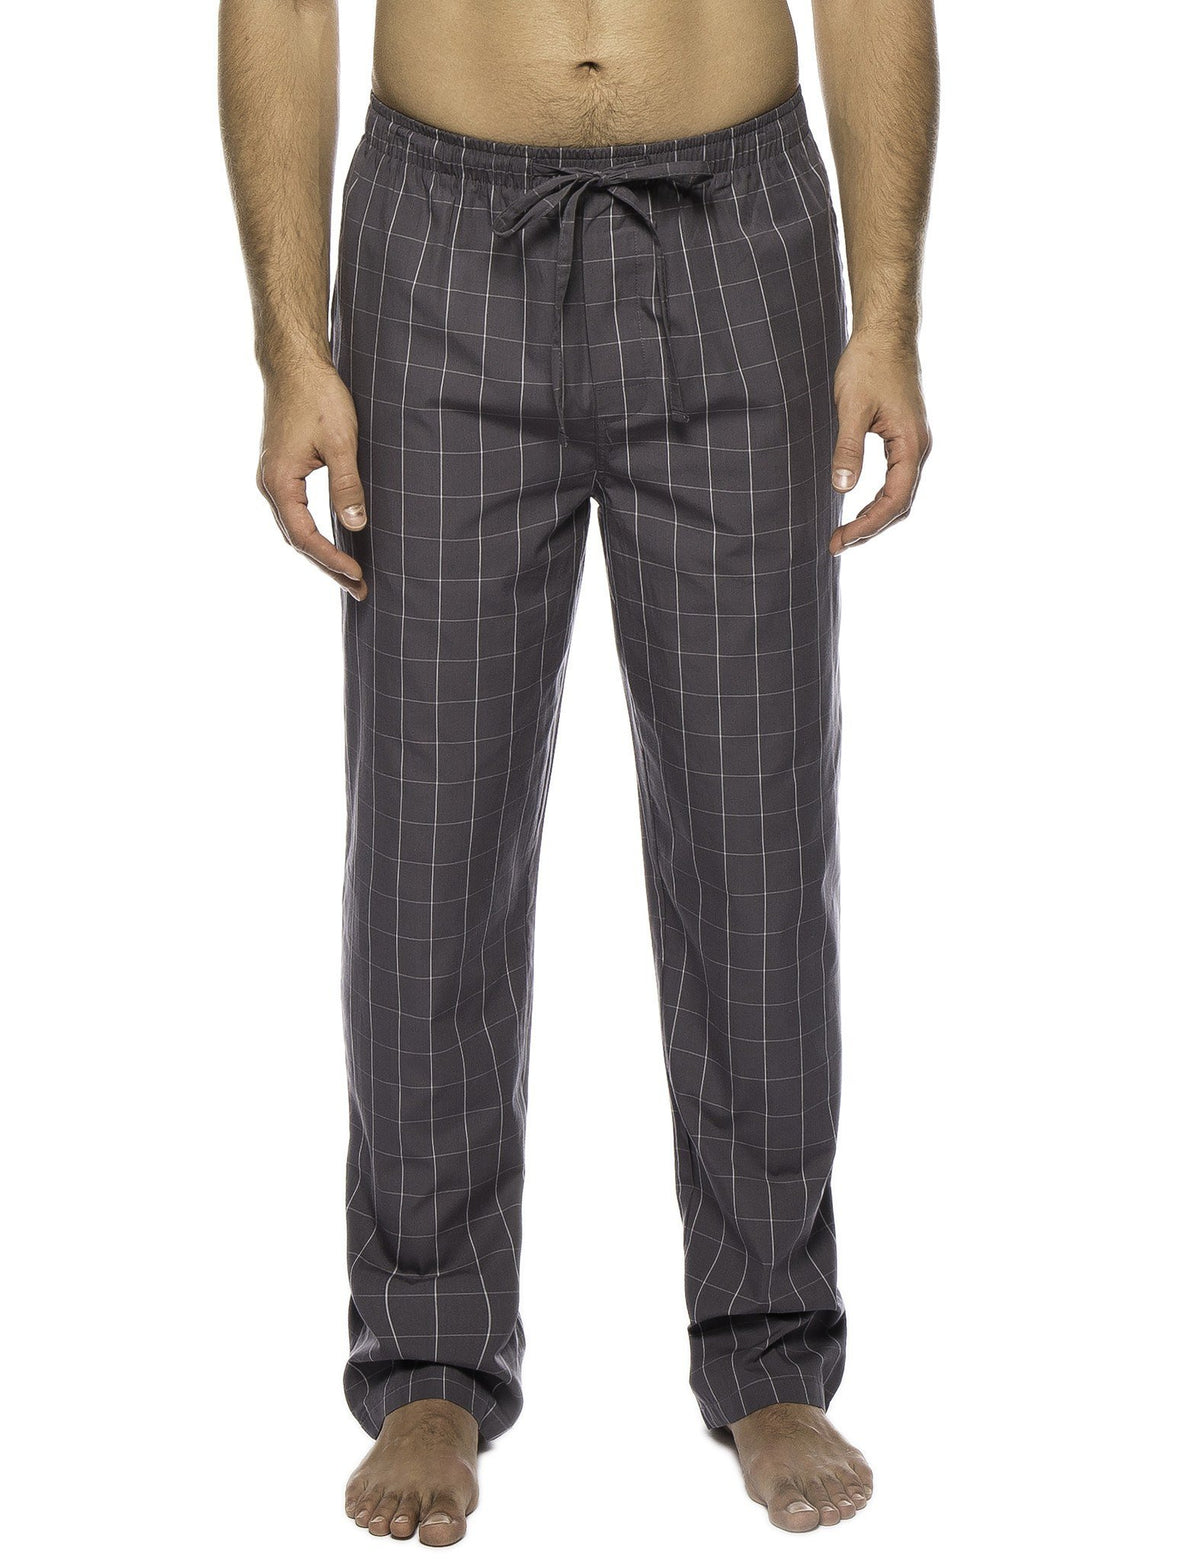 Men's 100% Woven Cotton Lounge Pants - Windowpane Checks Grey